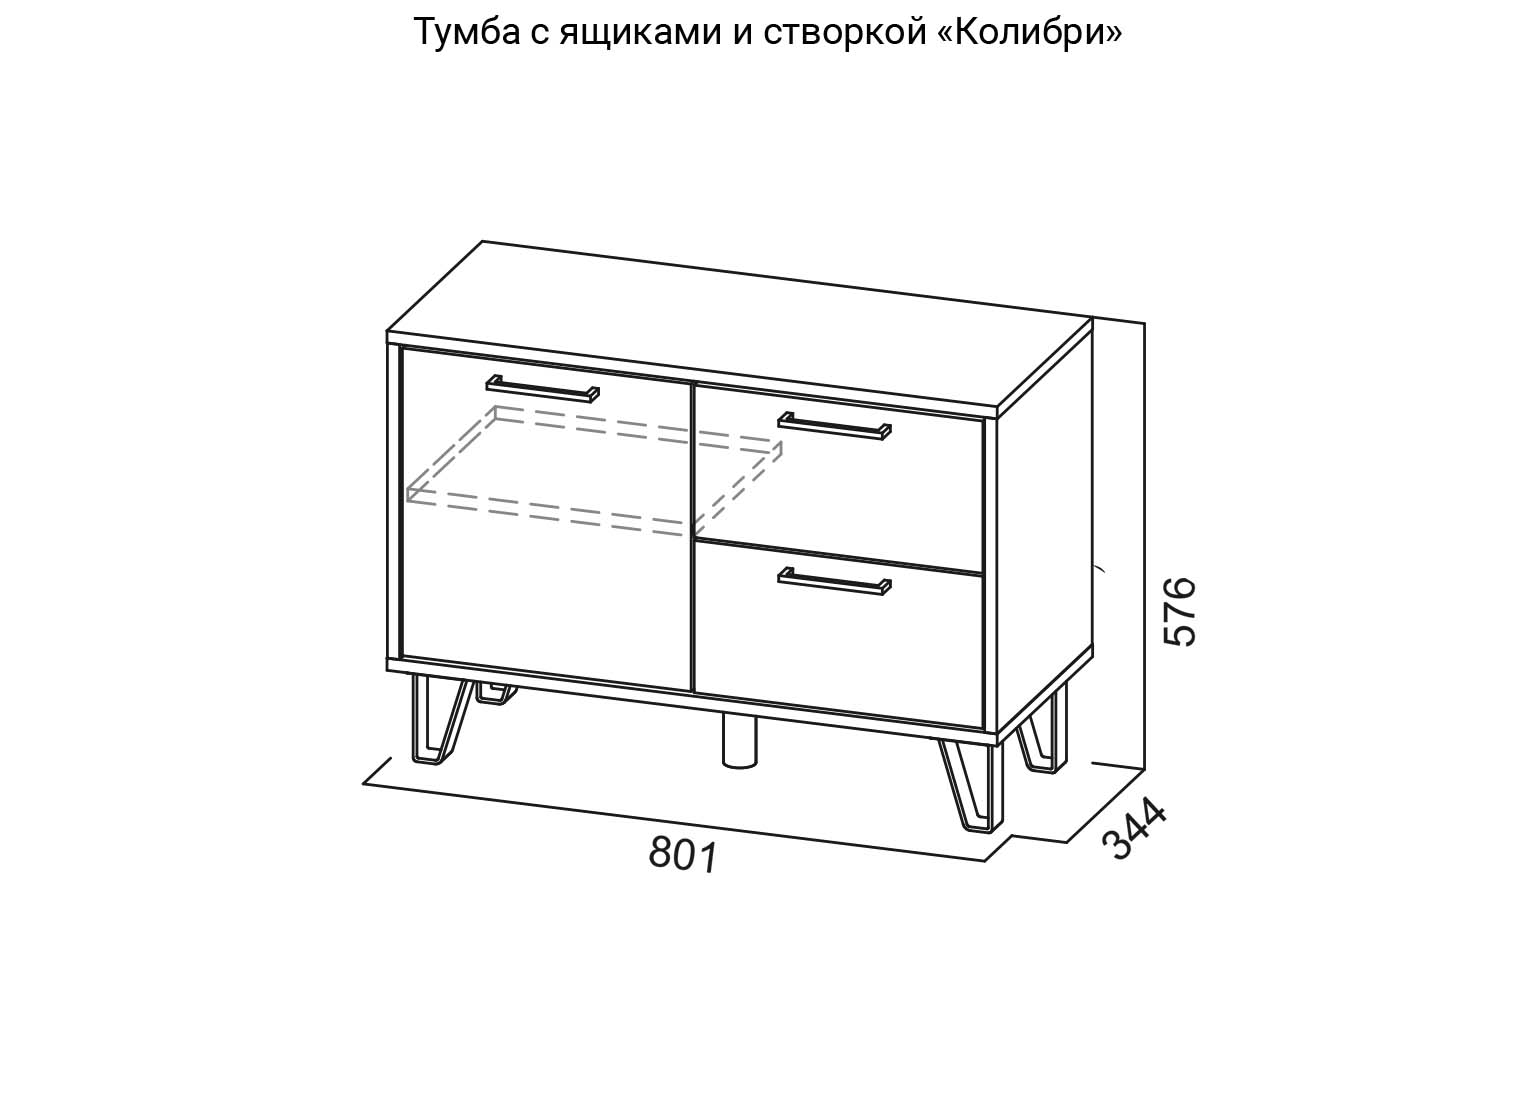 Тумба с ящиками и створкой Колибри схема SV-Мебель